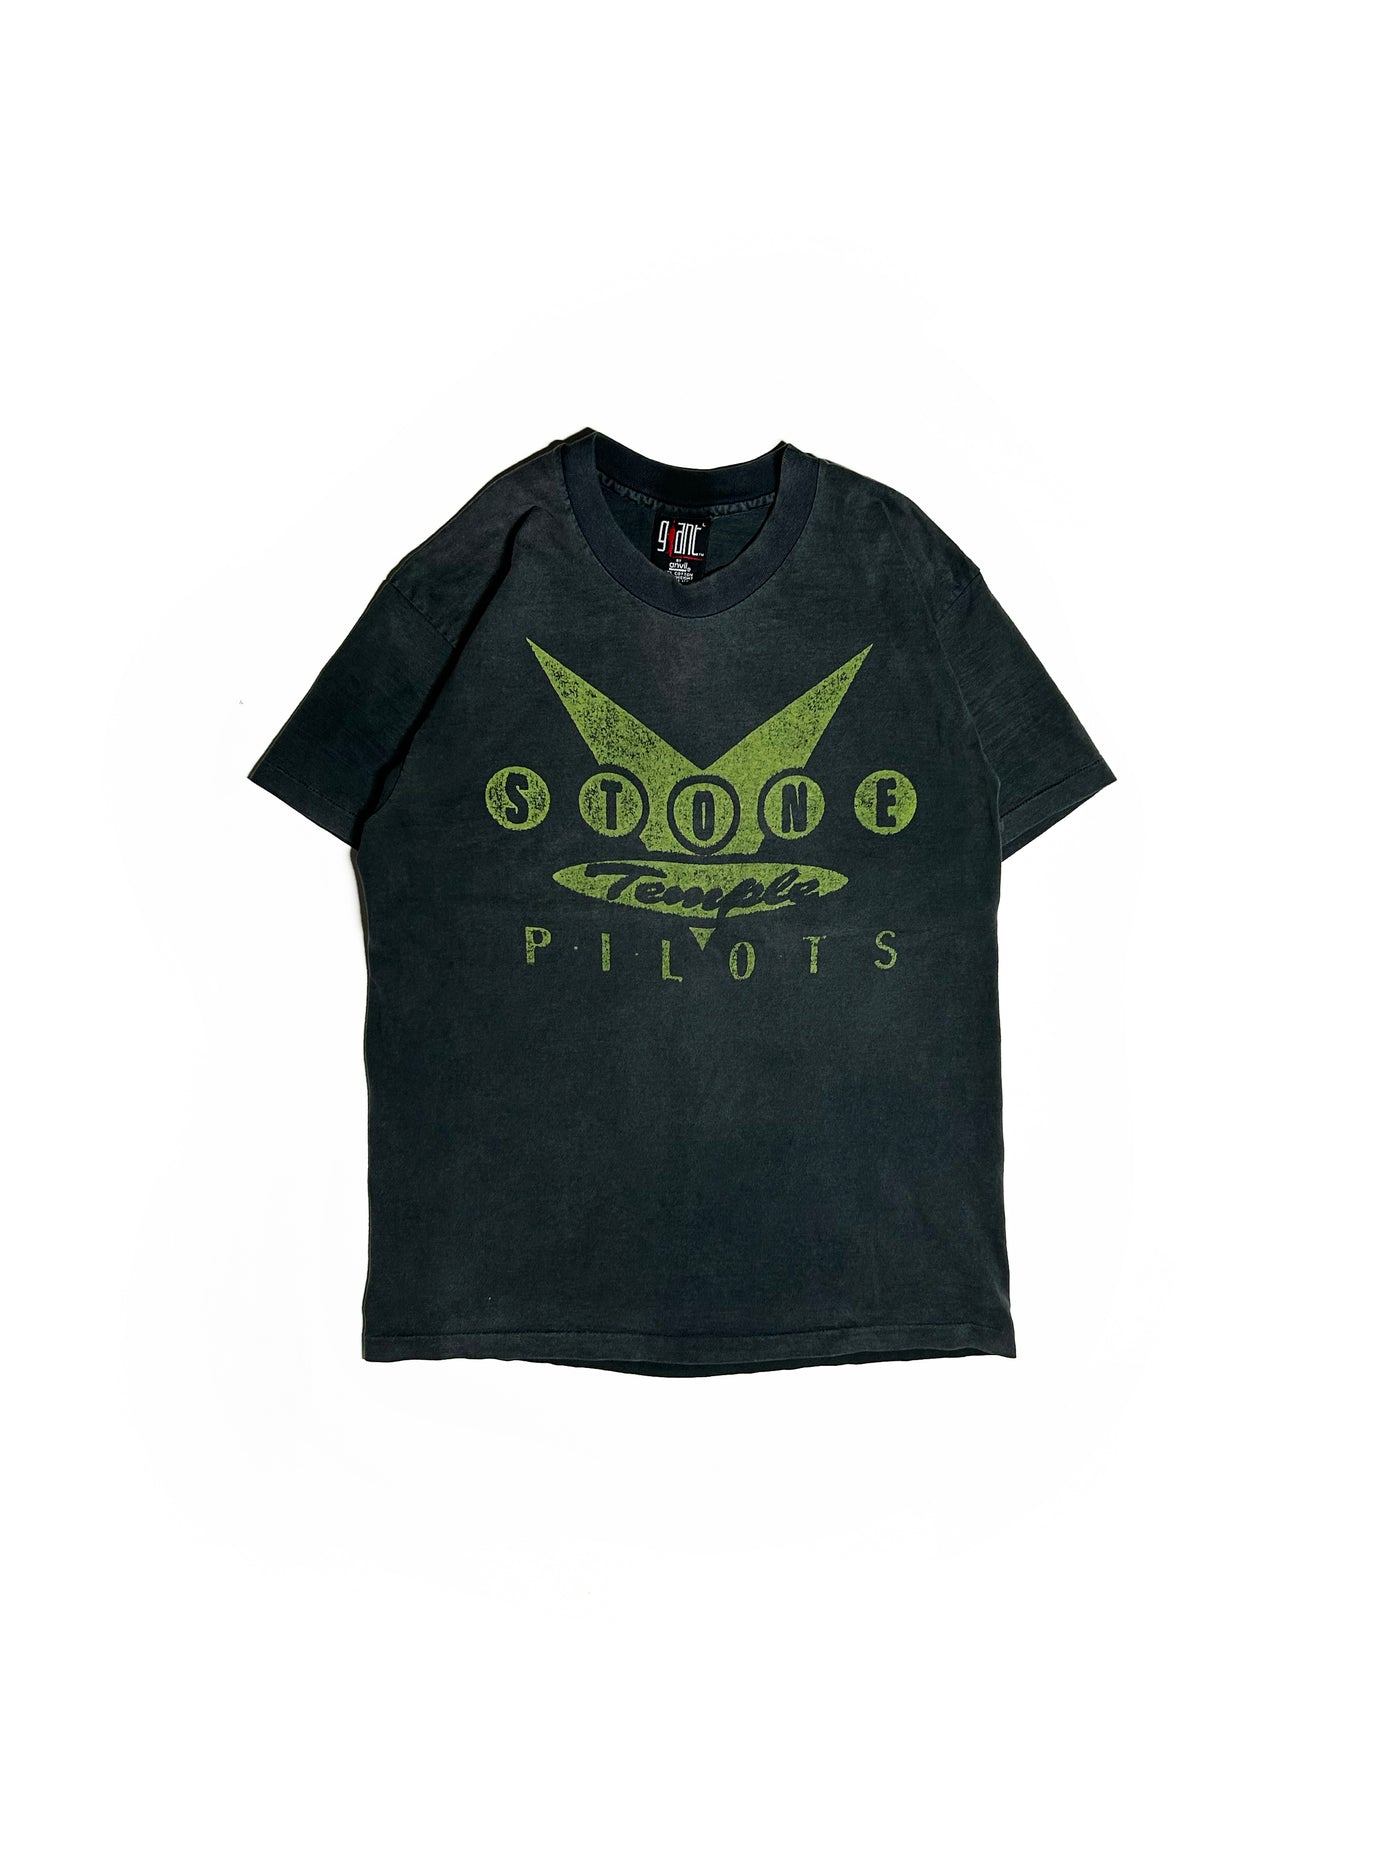 Vintage 90s Stone Temple Pilots Giant T-Shirt